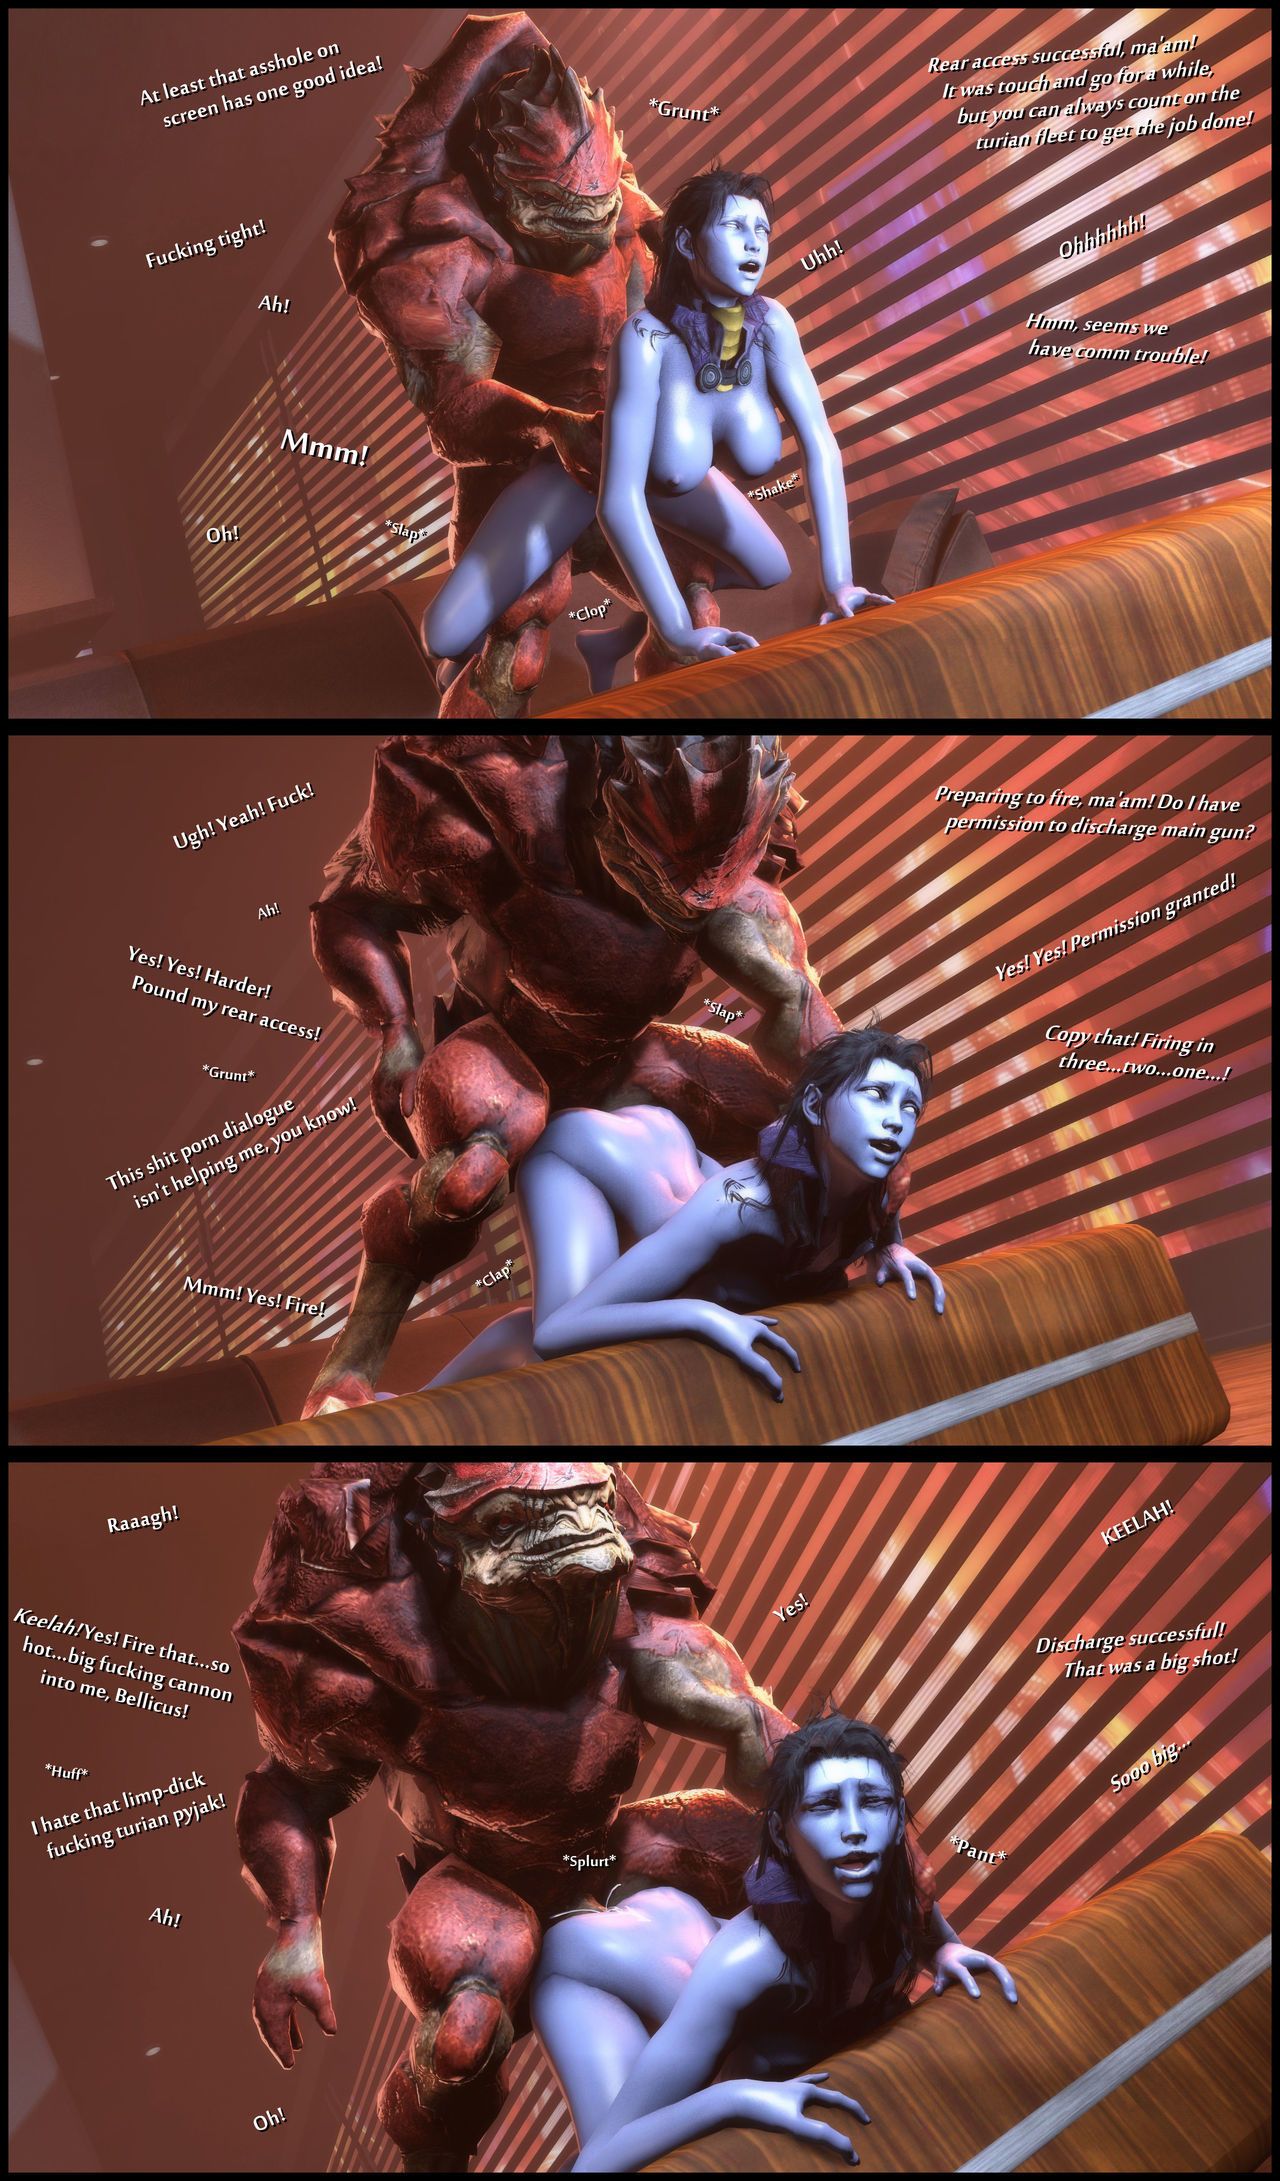 [foab30] Size Queen (Mass Effect) - part 2